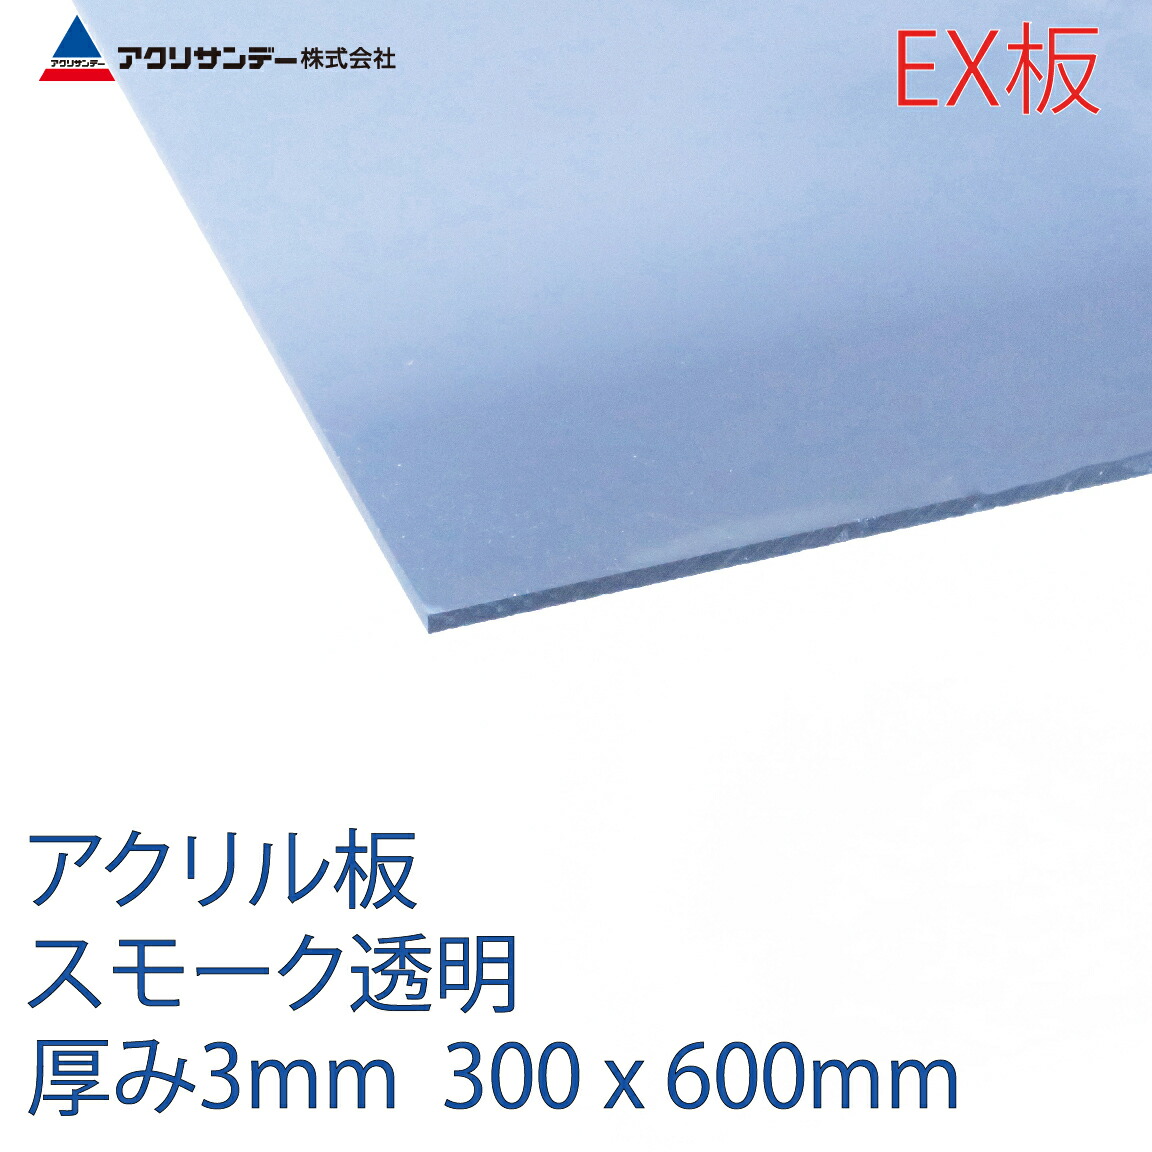 アクリサンデーEX板 アクリル スモーク(EX530) 透明 厚み3mm 300×600mm 連続キャスト方式 押出グレード プラスチック 色板 DIY